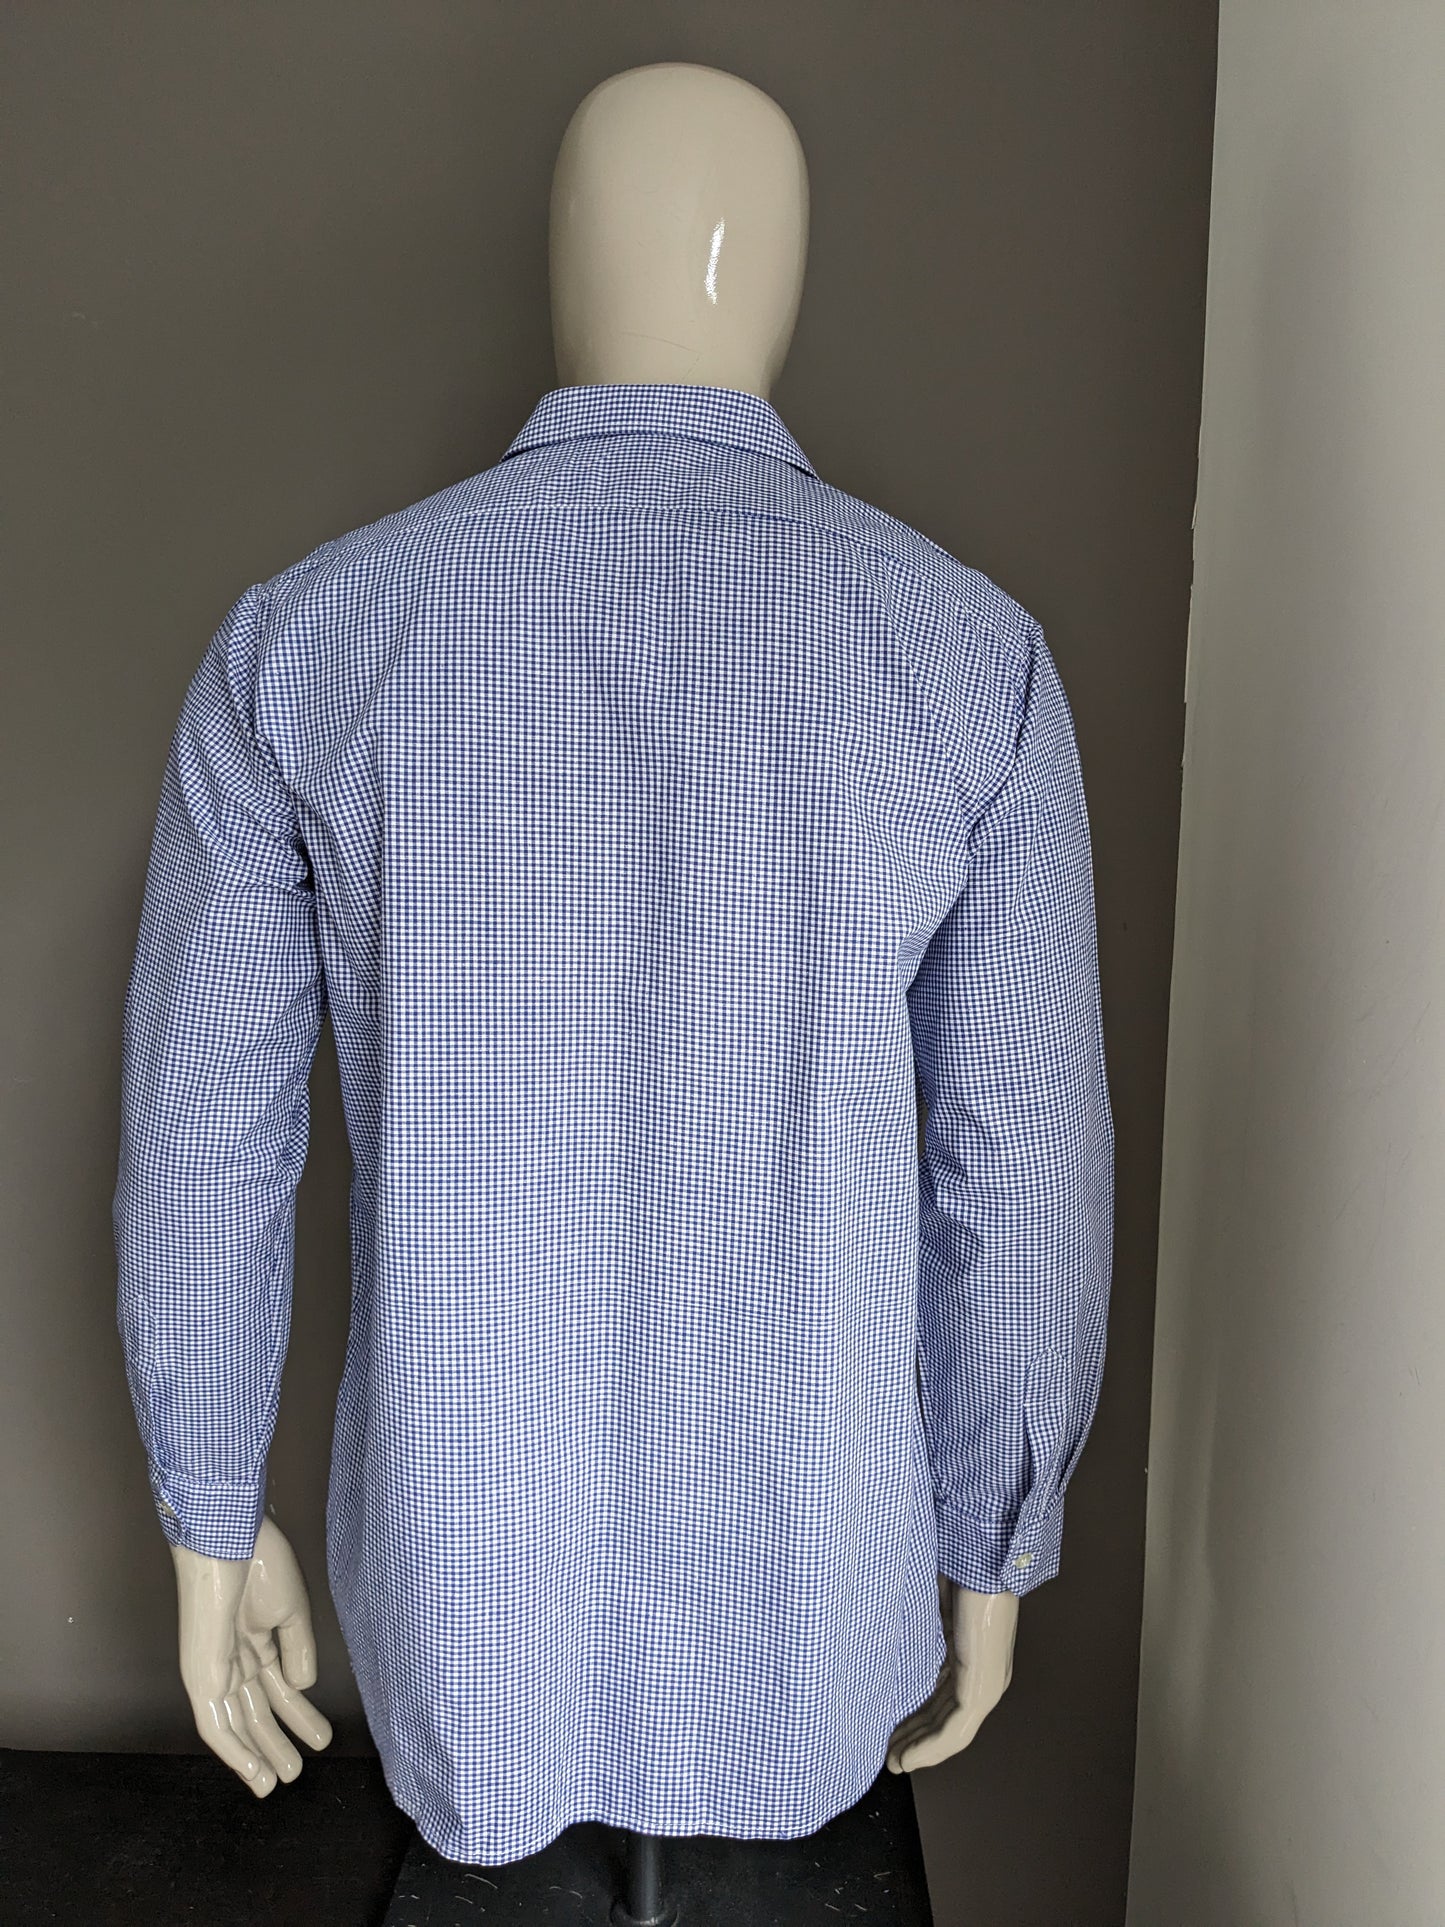 Vintage 70's shirt. Blue white checkered motif. Size L.